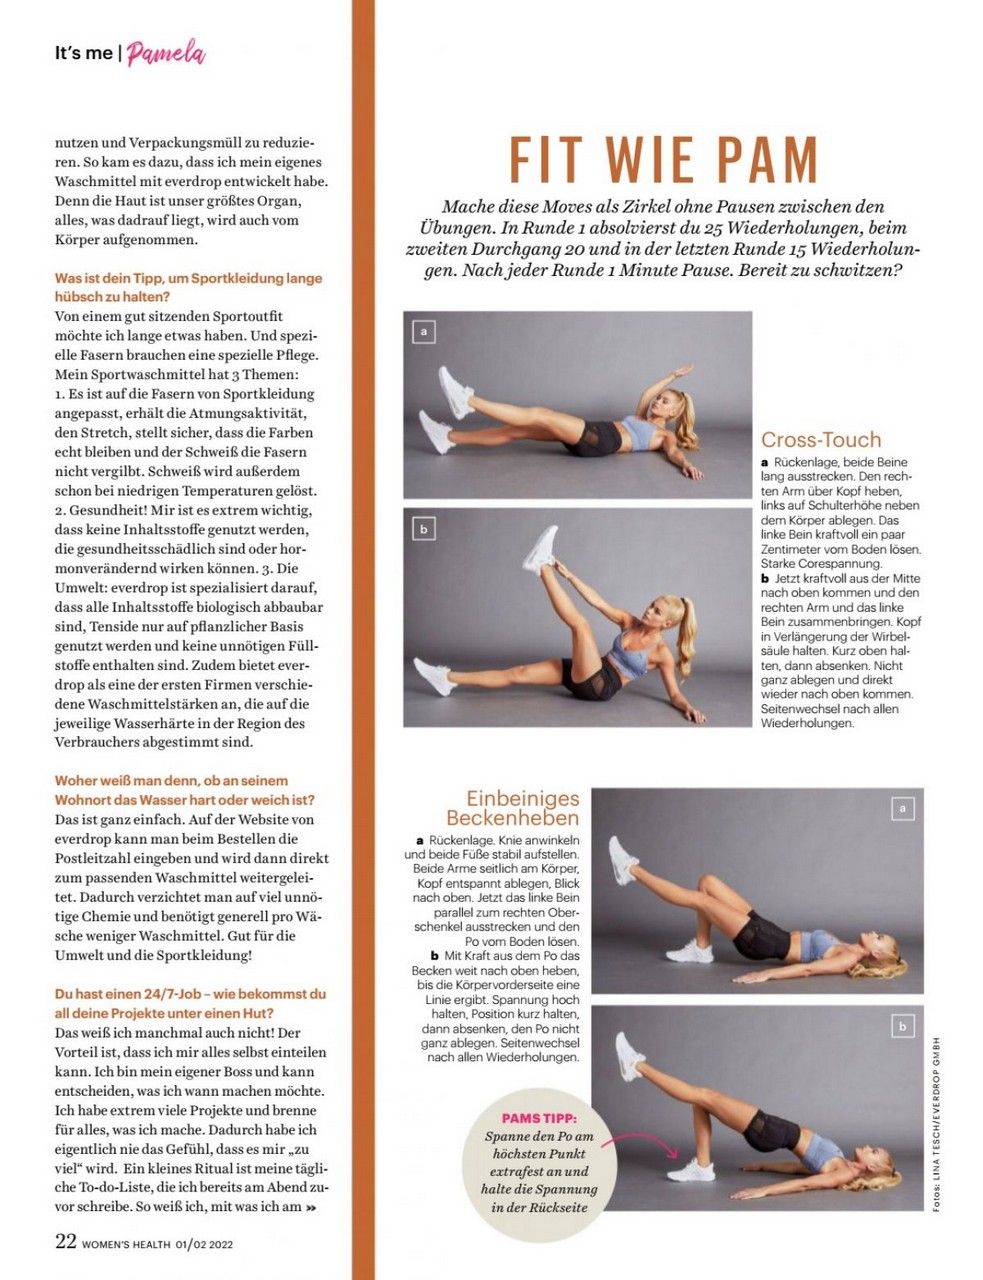 Pamela Reif For Women S Health Magazine Germany February